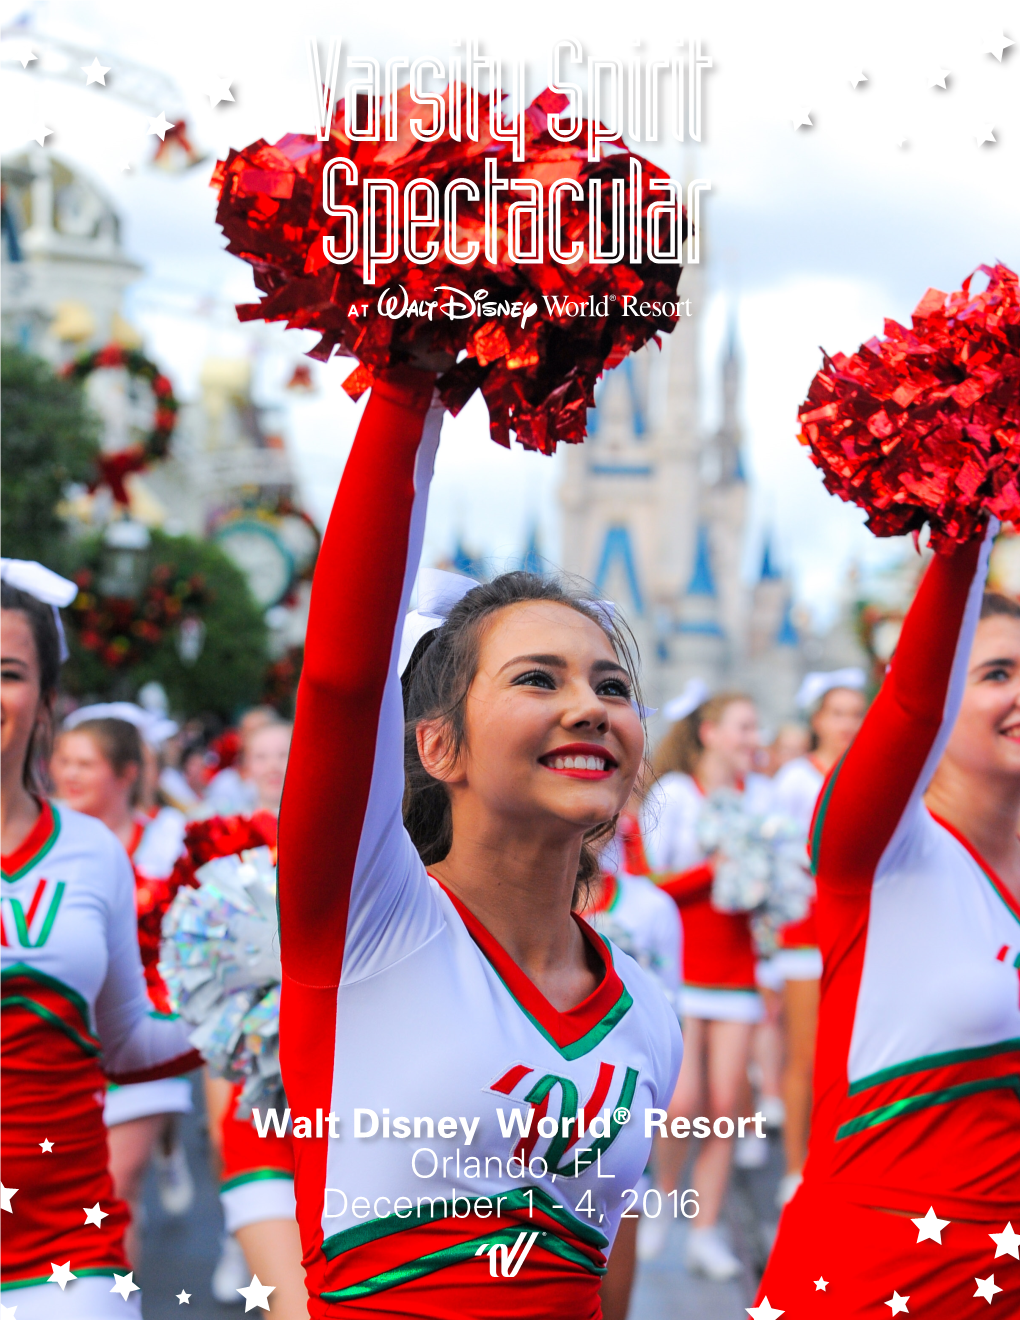 VARSITY SPIRIT SPECTACULAR Walt Disney World® Resort Orlando, FL | December 1 - 4, 2016